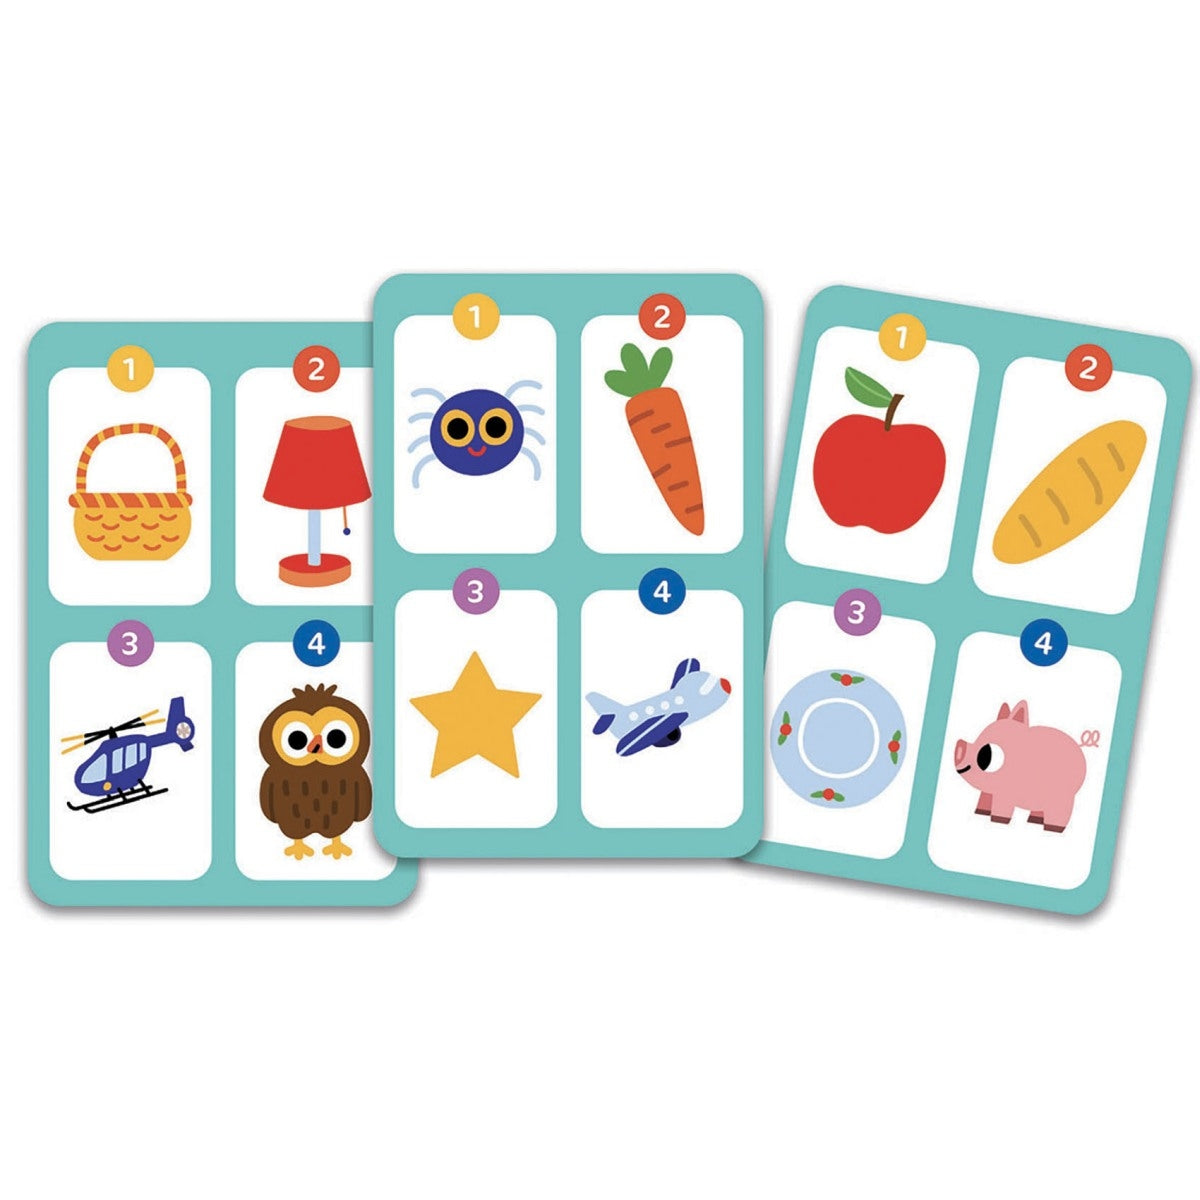 DJECO Kartenspiel für Kinder ab 5 Jahren. Hier werden Gegenstände, Persönlichkeiten, Tiere erraten... Damit der Spielpartner sämtliche Bilder errät, muss man hoch konzentriert sein. Ein erstes Sprachspiel für die ganze Familie.